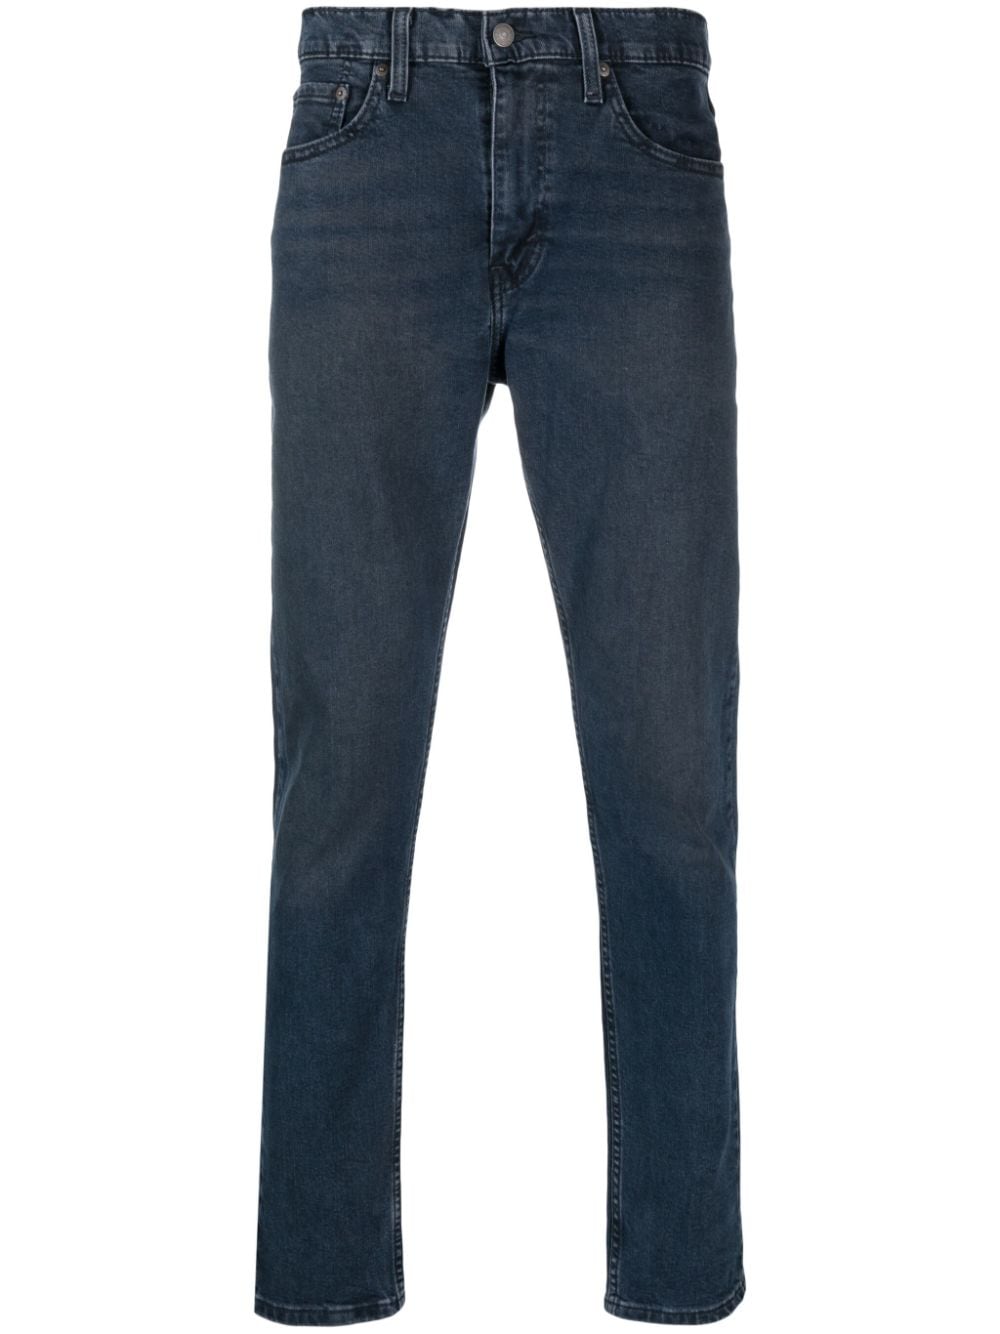 Low-rise slim-cut jeans